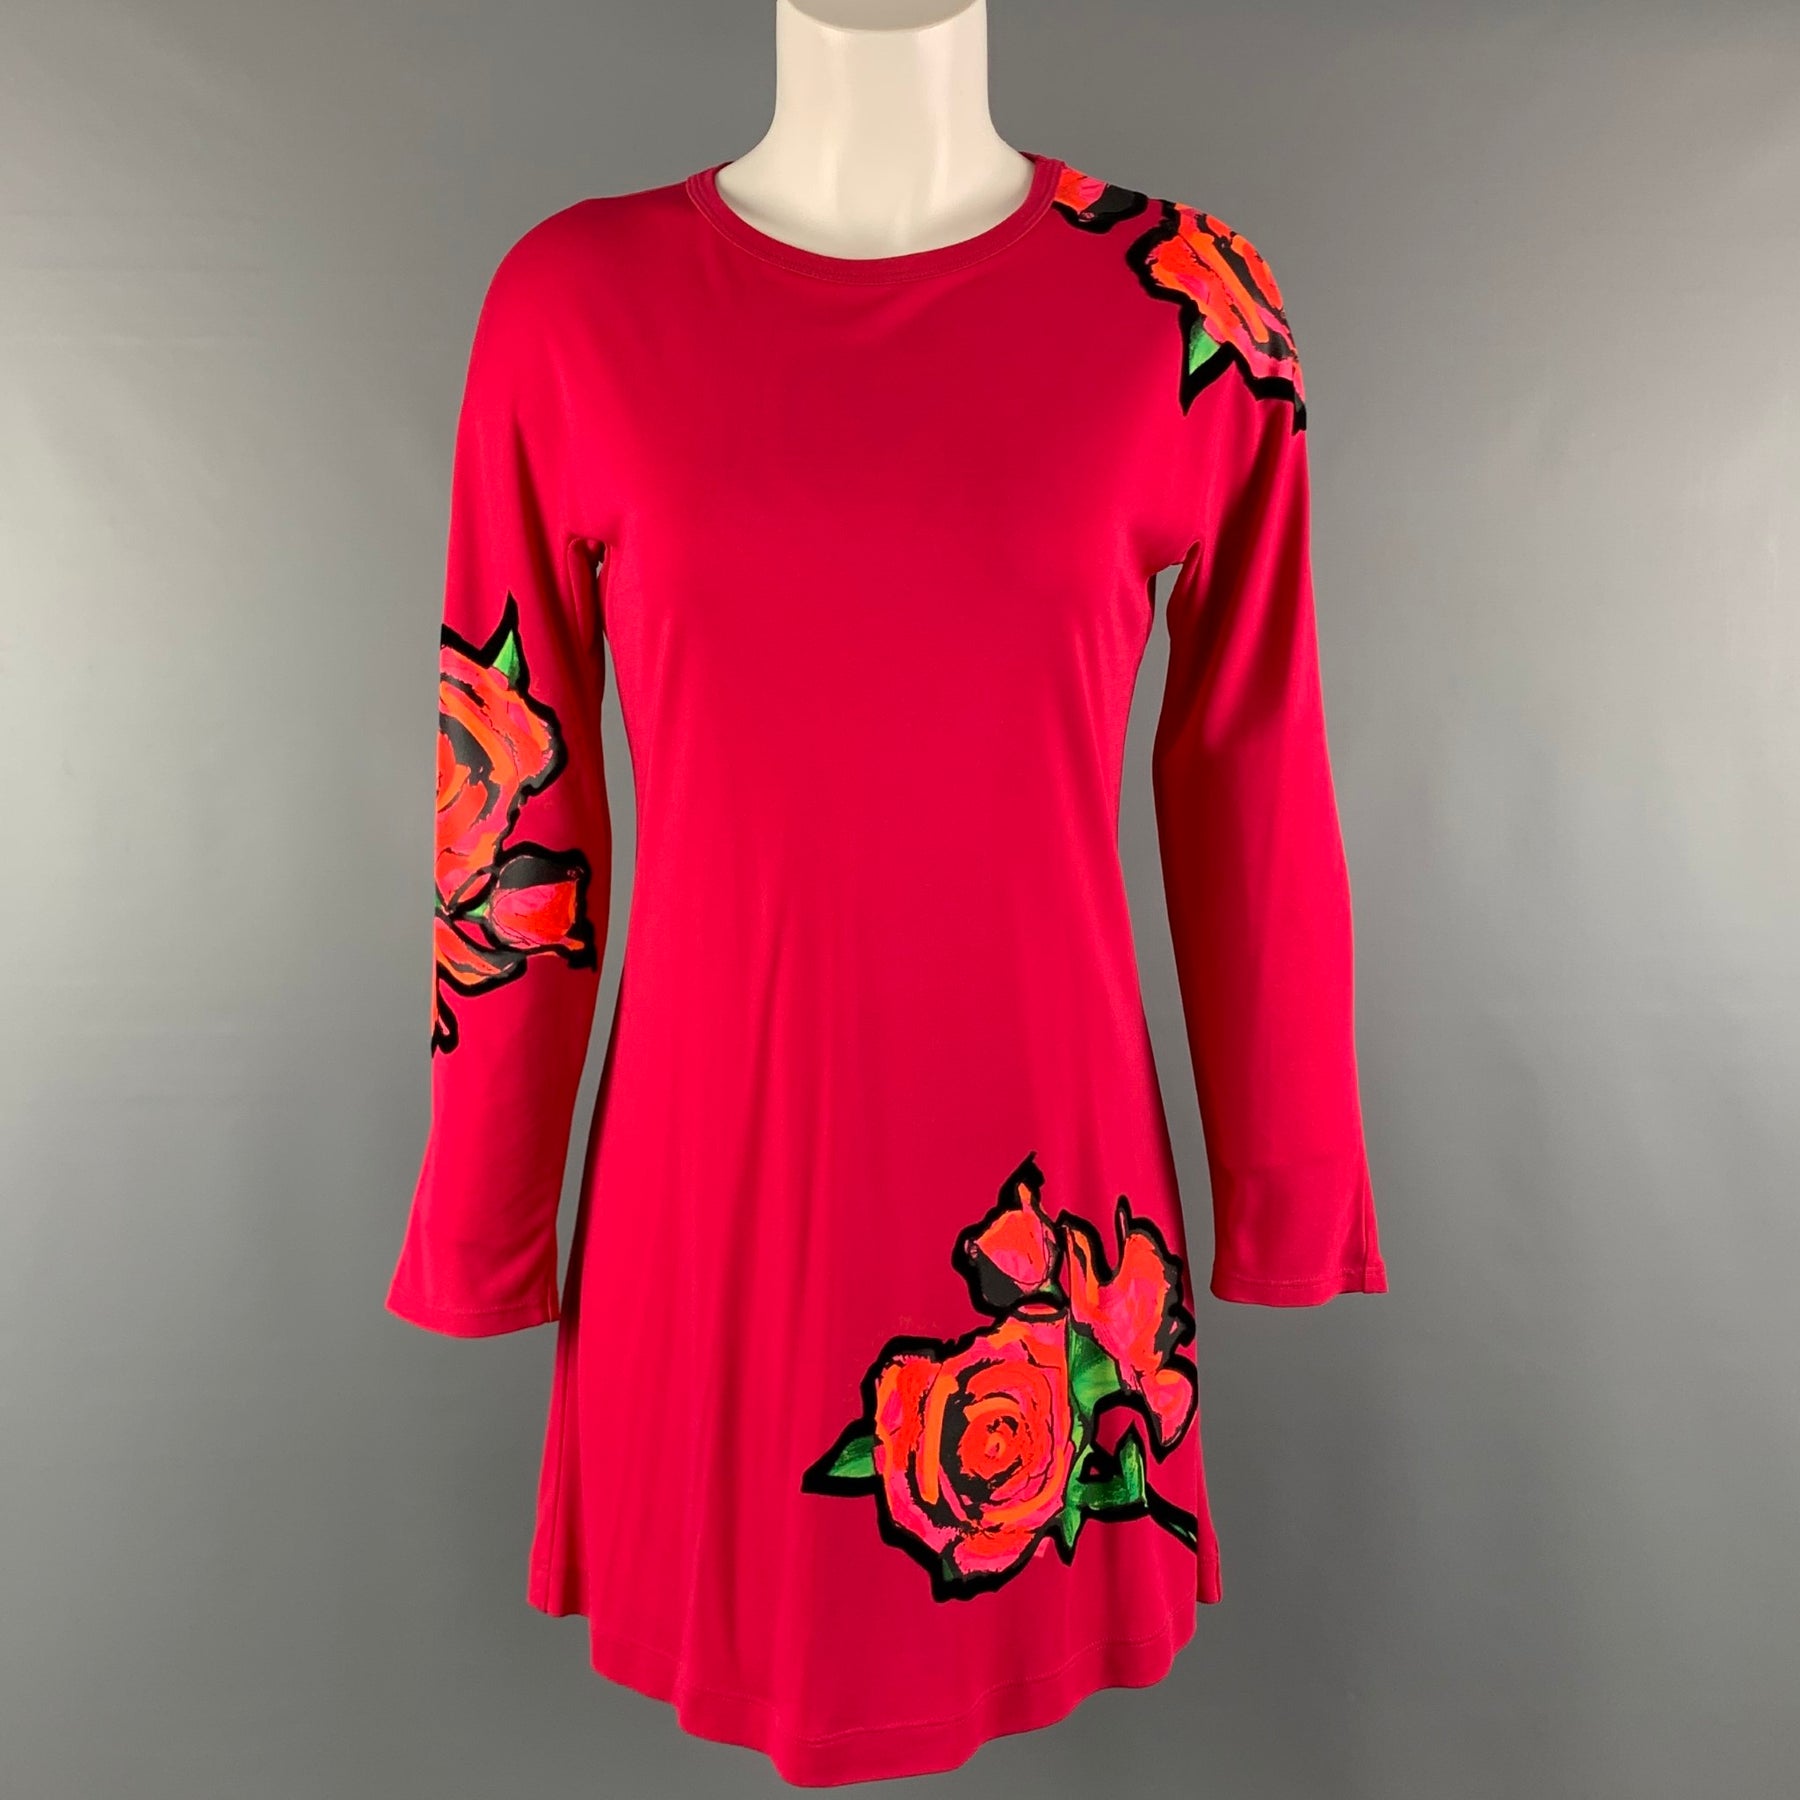 Louis Vuitton Red/Black Cotton Short Sleeve Floral Print Dress Size Xs